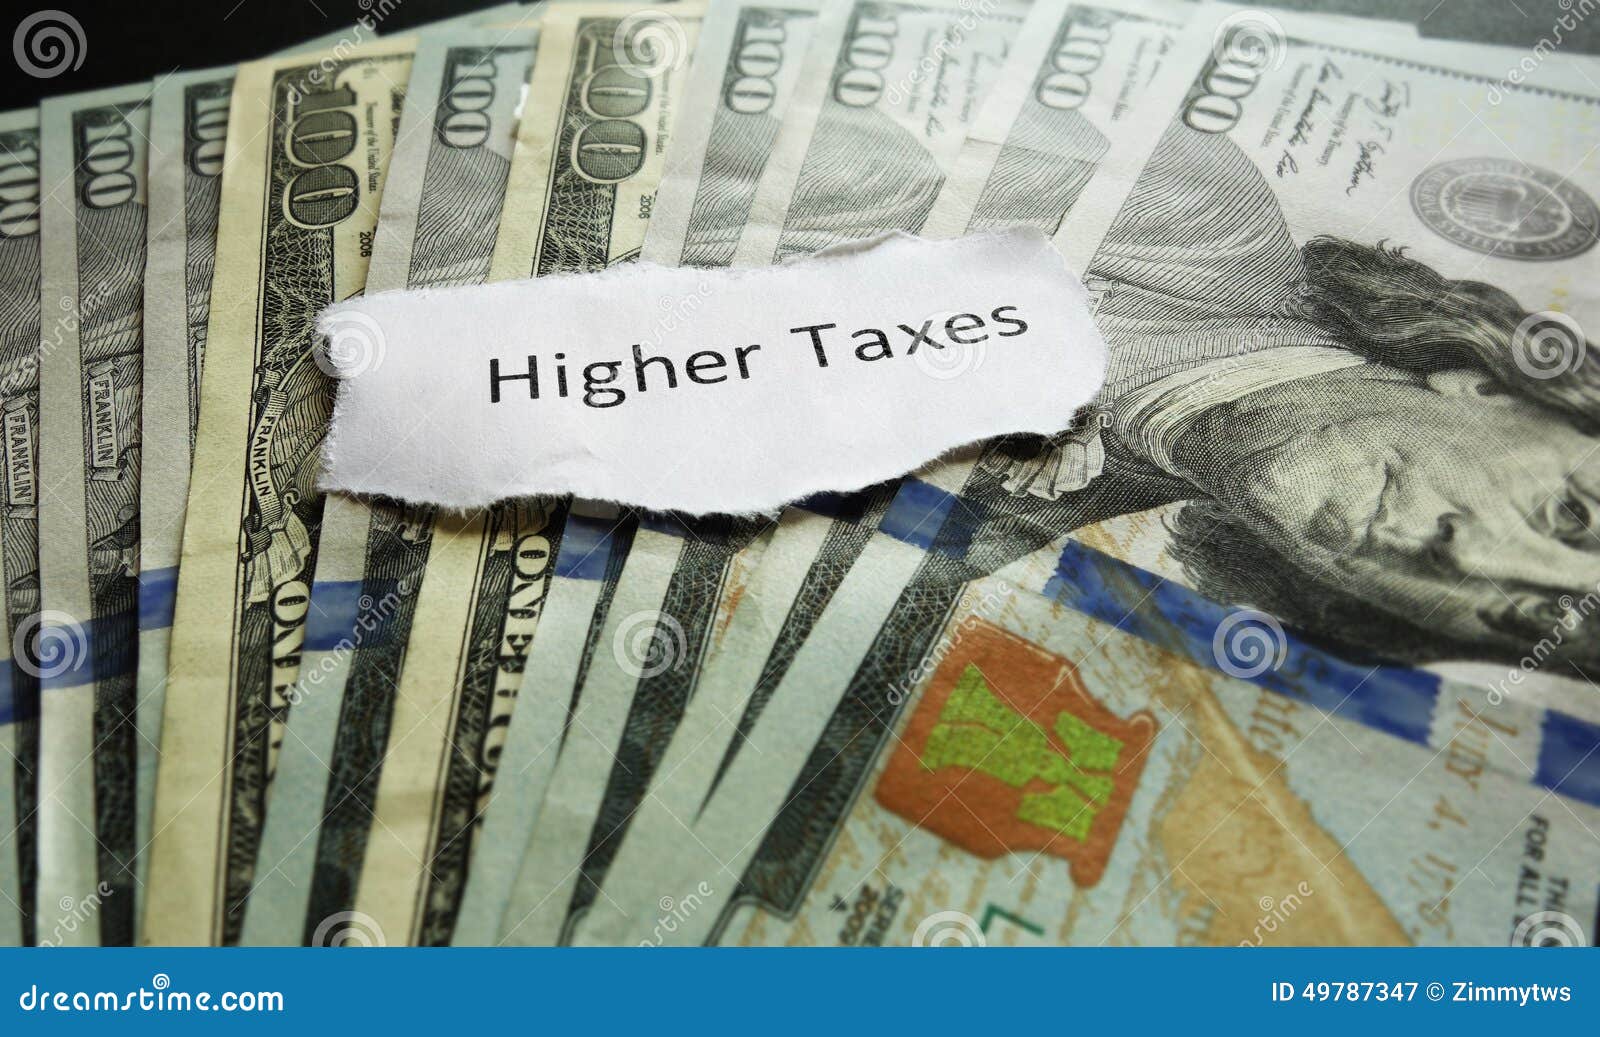 higher taxes